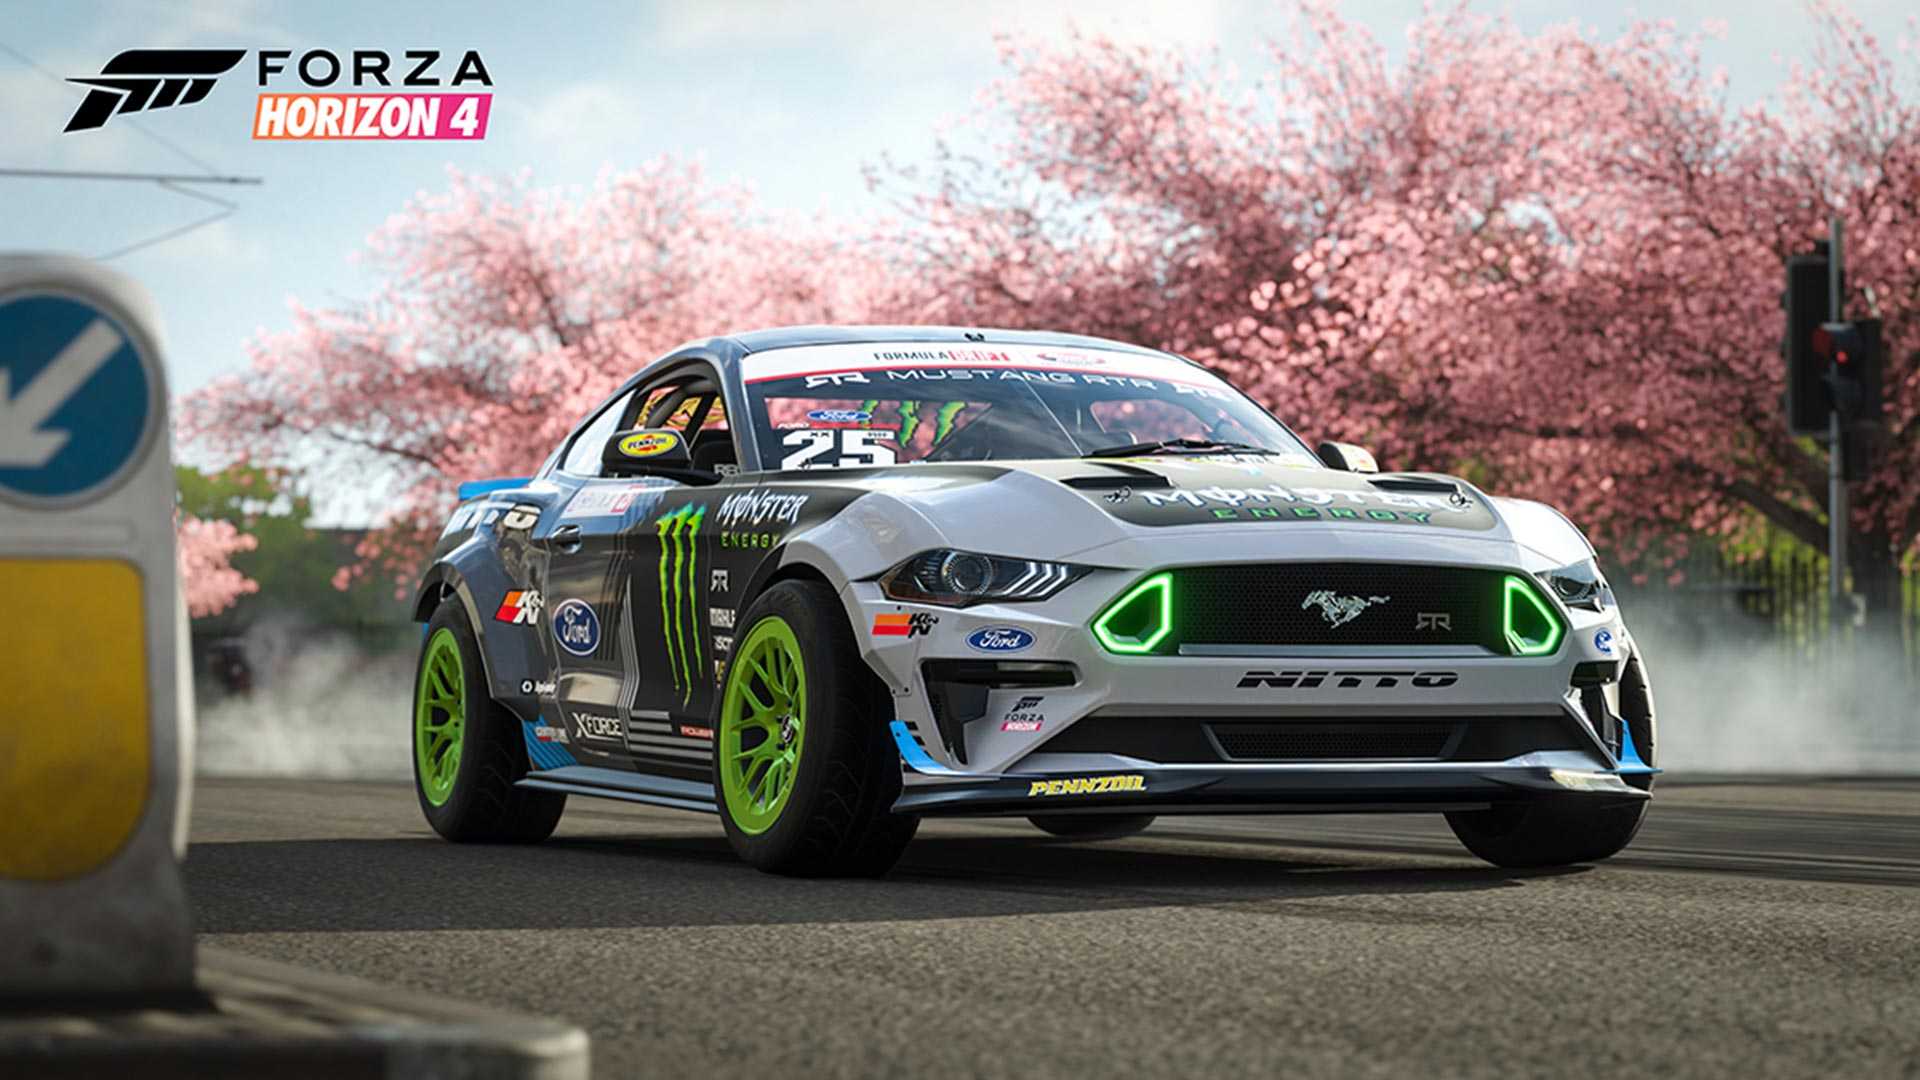 Forza Motorsport 7, Forza Horizon 4 Updates Add RTR Drift cars